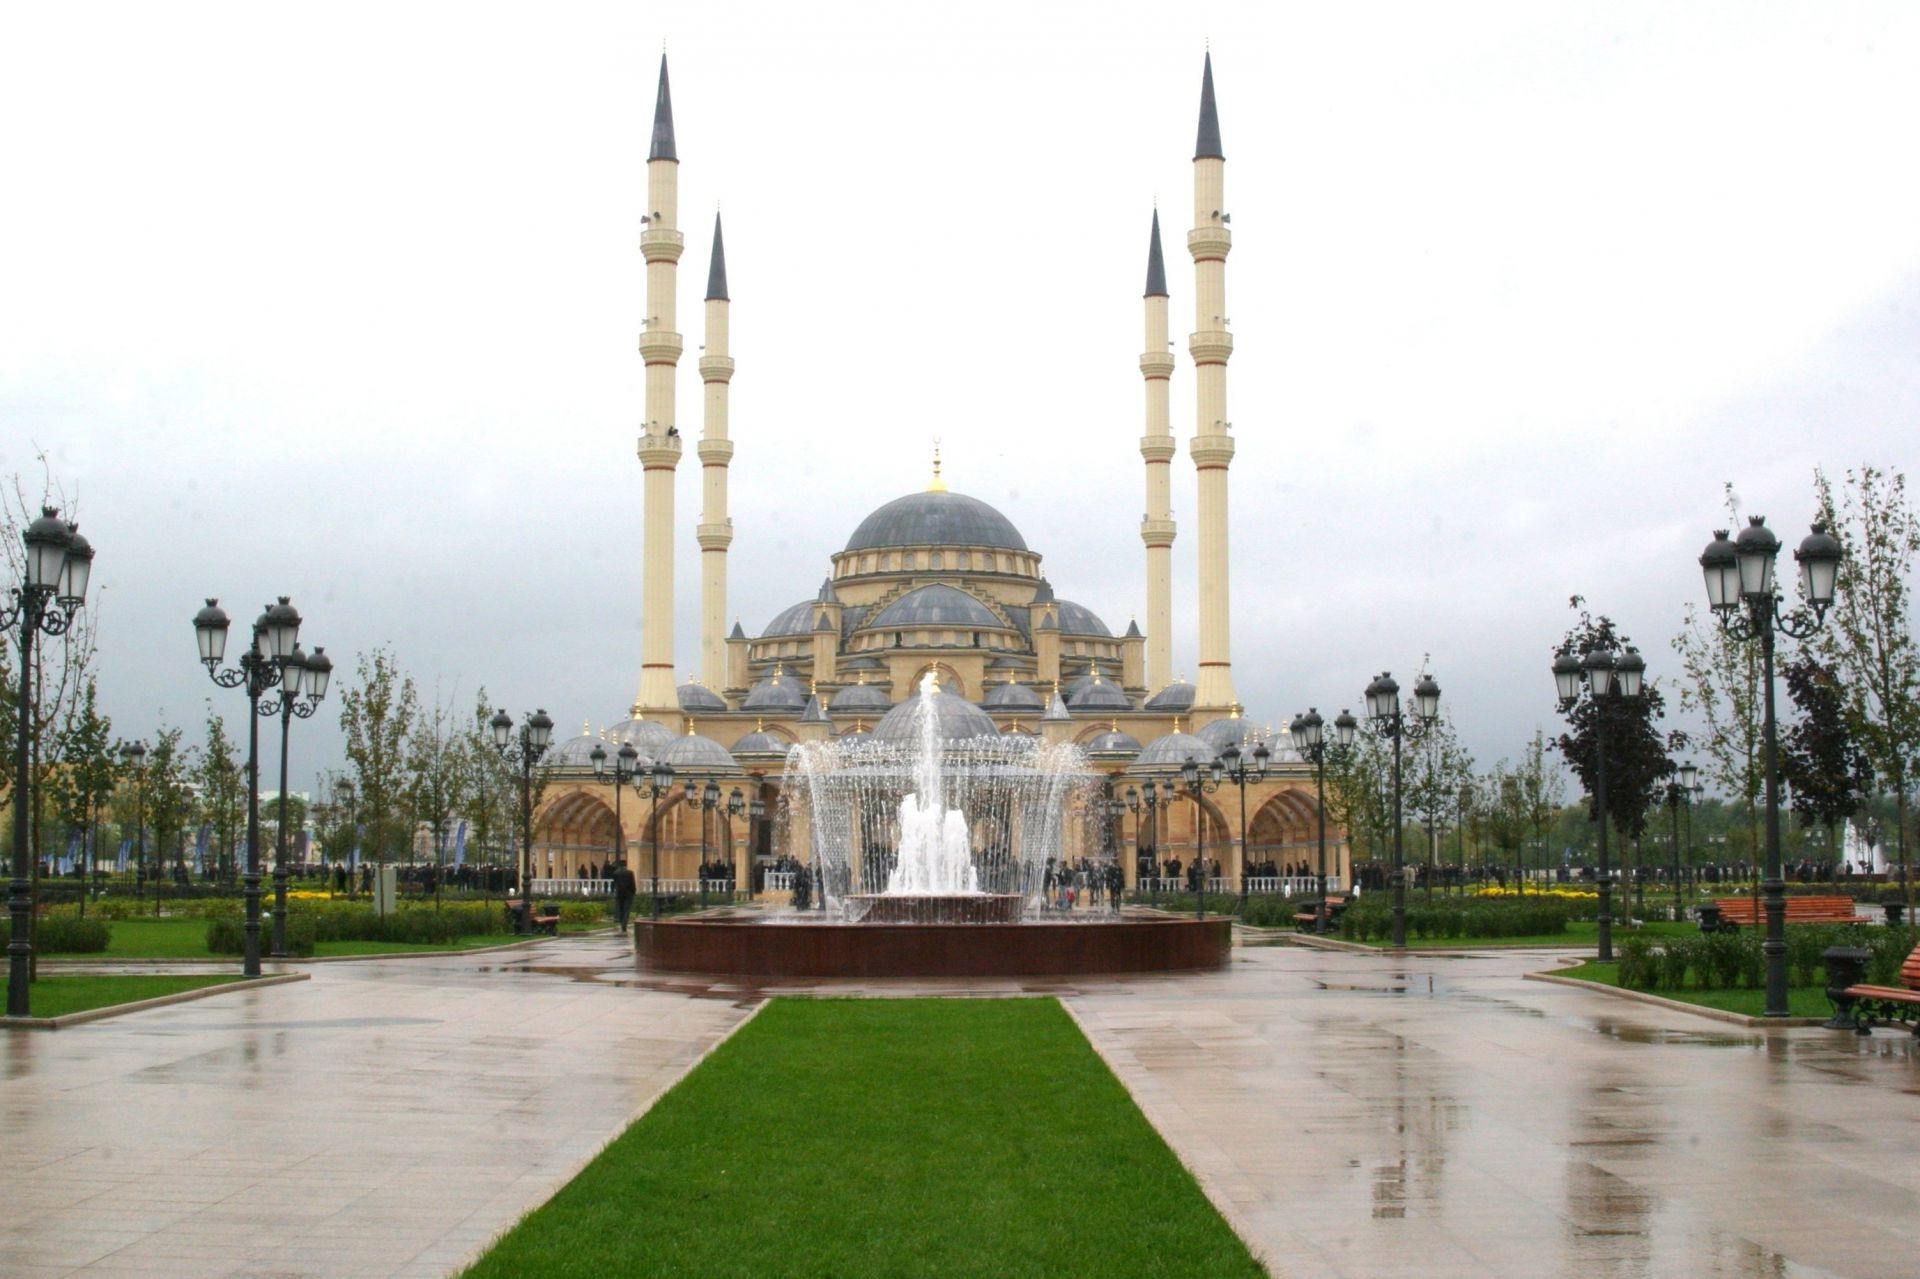 фонтаны минарет религия архитектура купол дом путешествия достопримечательность туризм небо город храм памятник на открытом воздухе религиозные османской музей